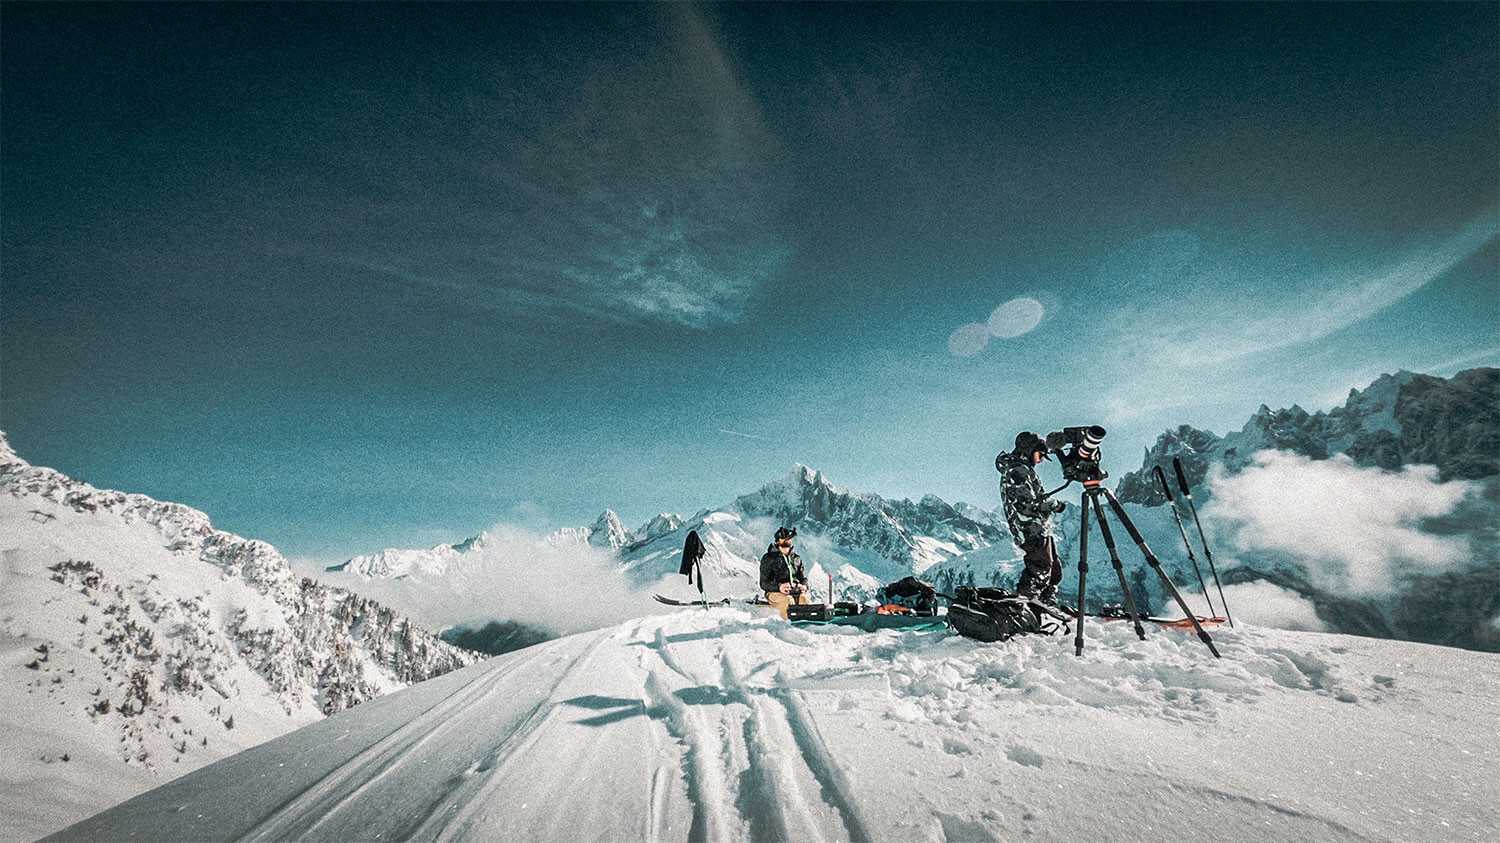 FLOW: The Freeride Ski Film volledig opgenomen met drones in Chamonix